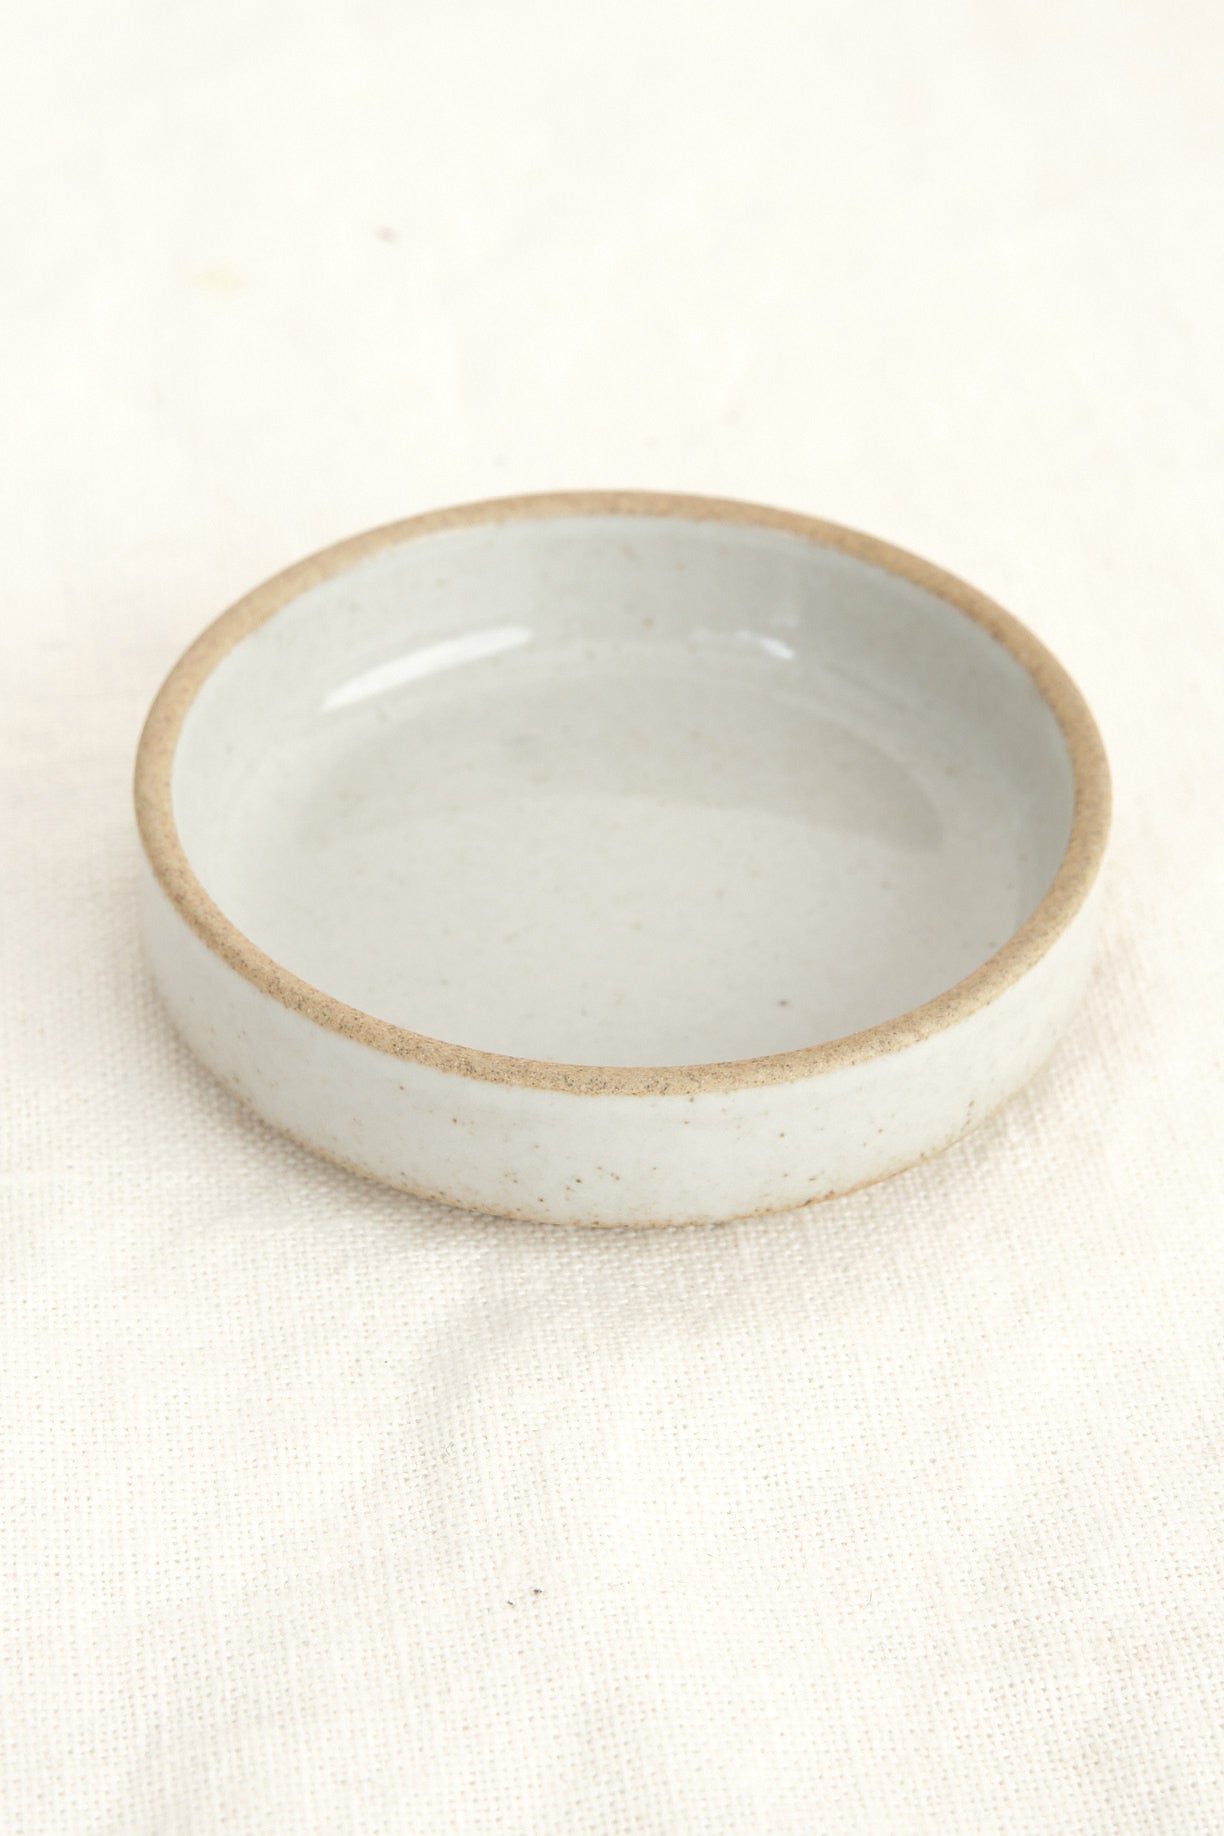 Hasami Porcelain in stock